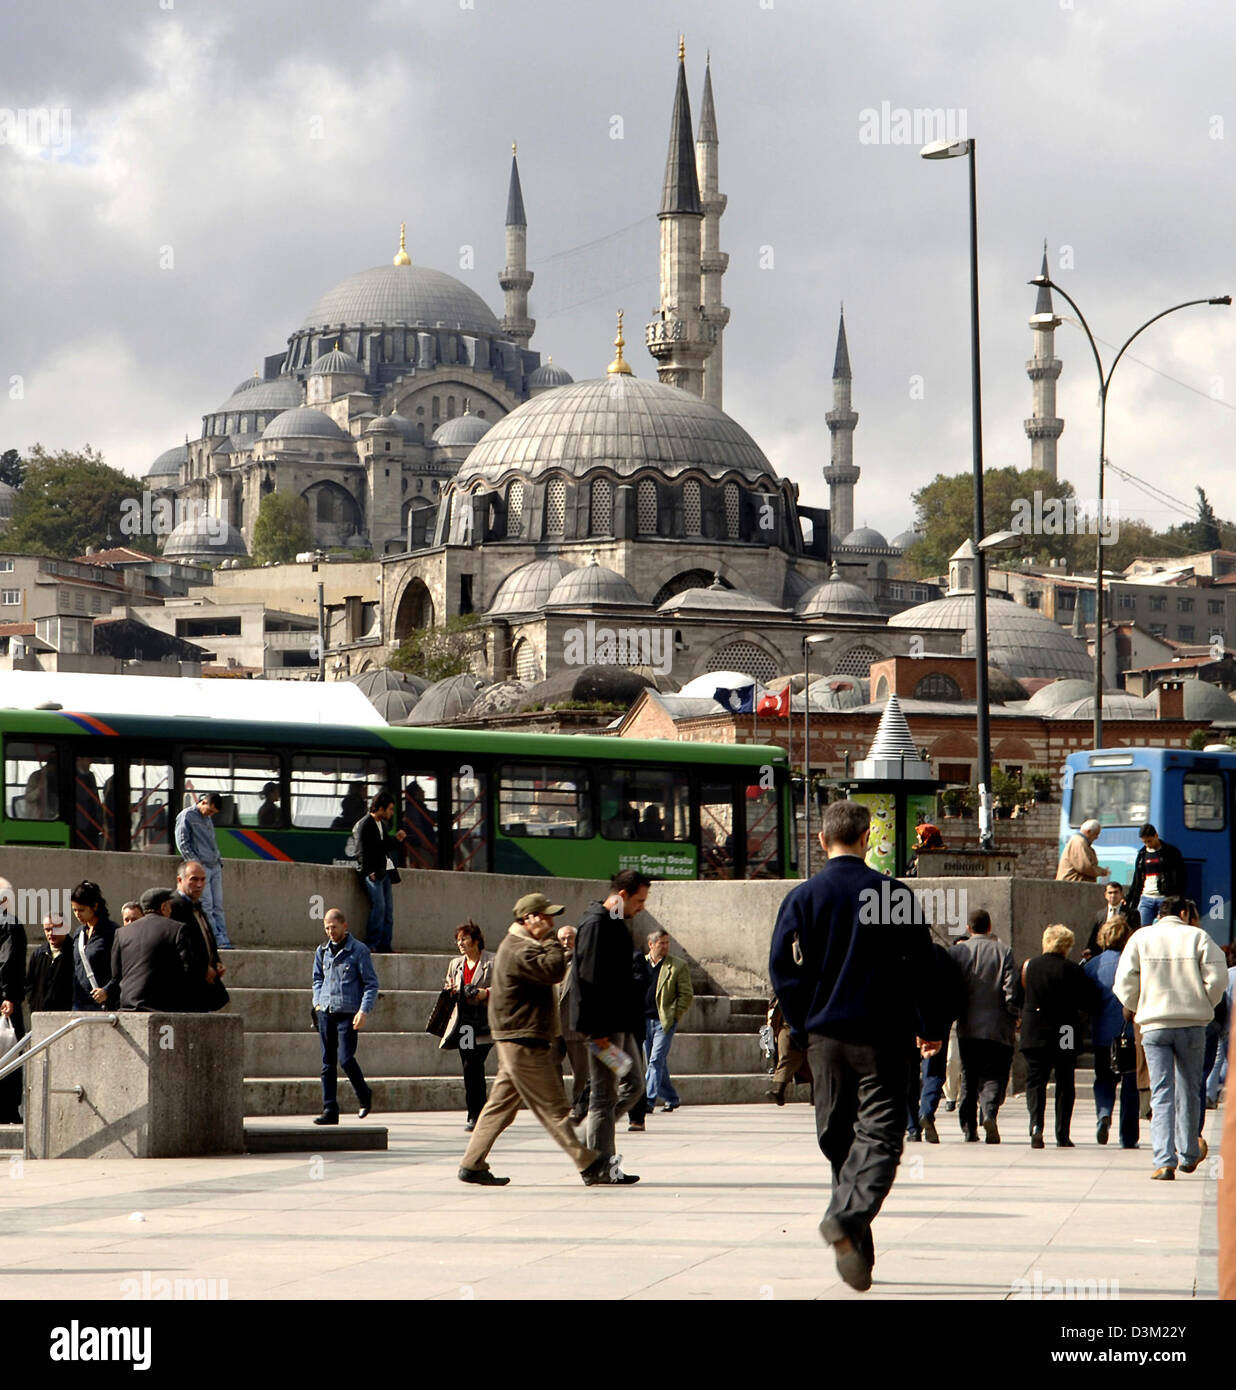 (Afp) - l'image montre la mosquée de Soliman à la Corne d'or dans le district d'Eminönü Istanbul, Turquie, 19 octobre 2005. Photo : Achim Scheidemann Banque D'Images